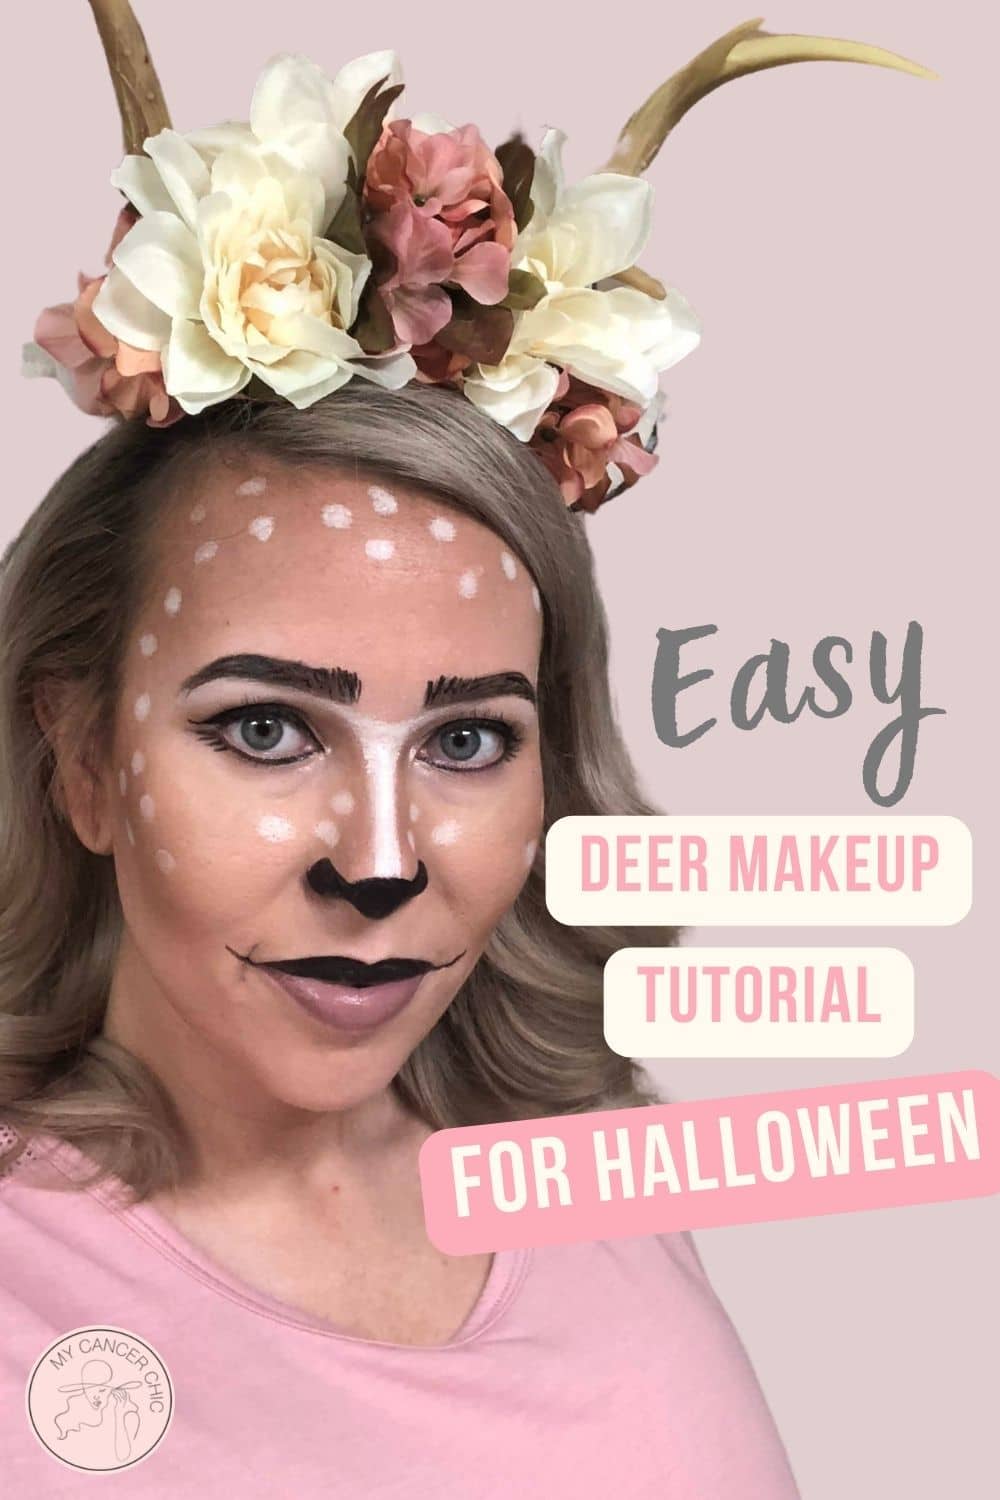 deer-makeup-pin-3.jpg